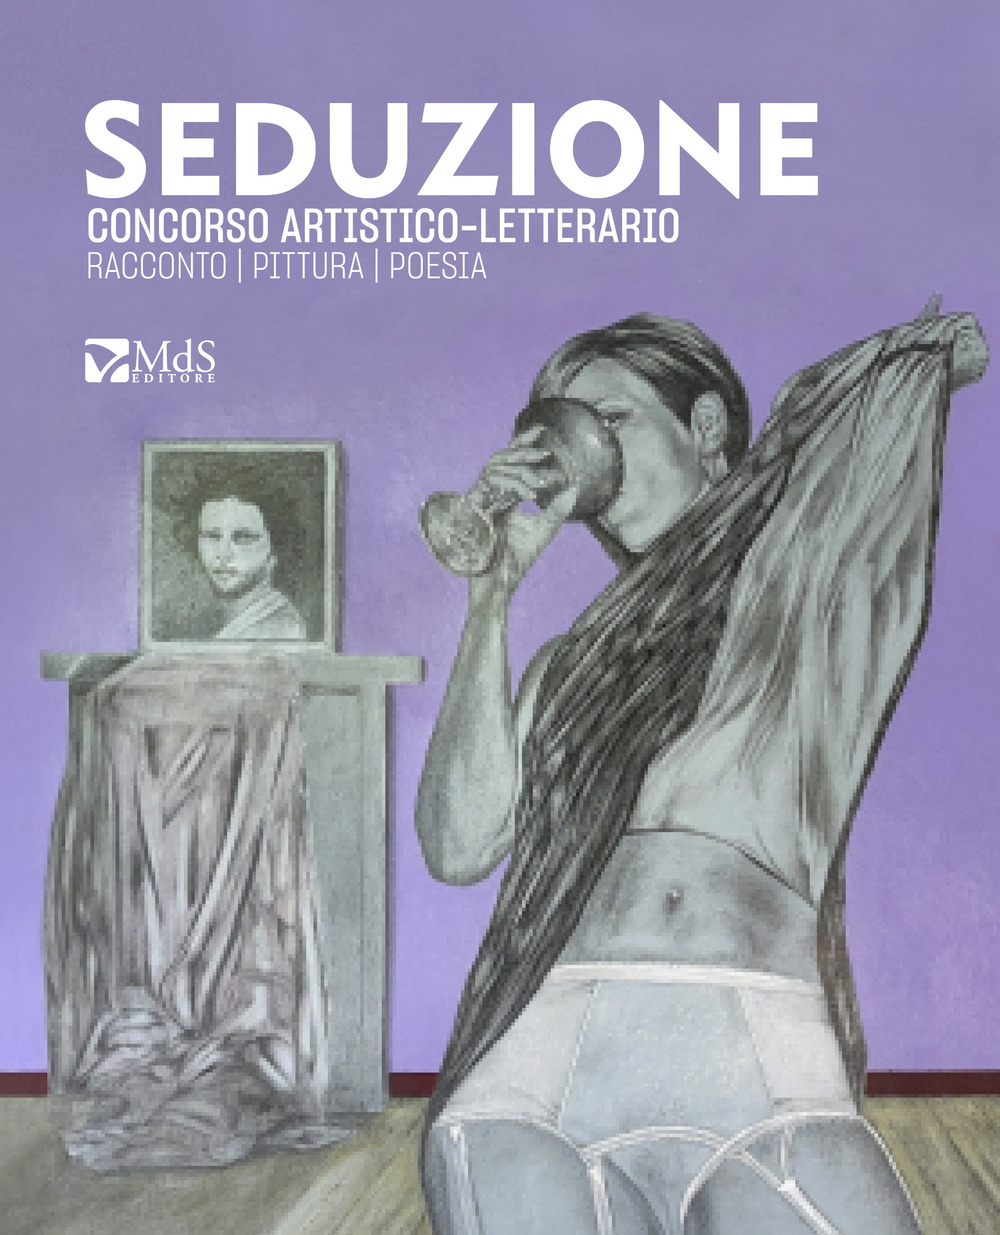 Libri Seduzione NUOVO SIGILLATO, EDIZIONE DEL 03/12/2021 SUBITO DISPONIBILE